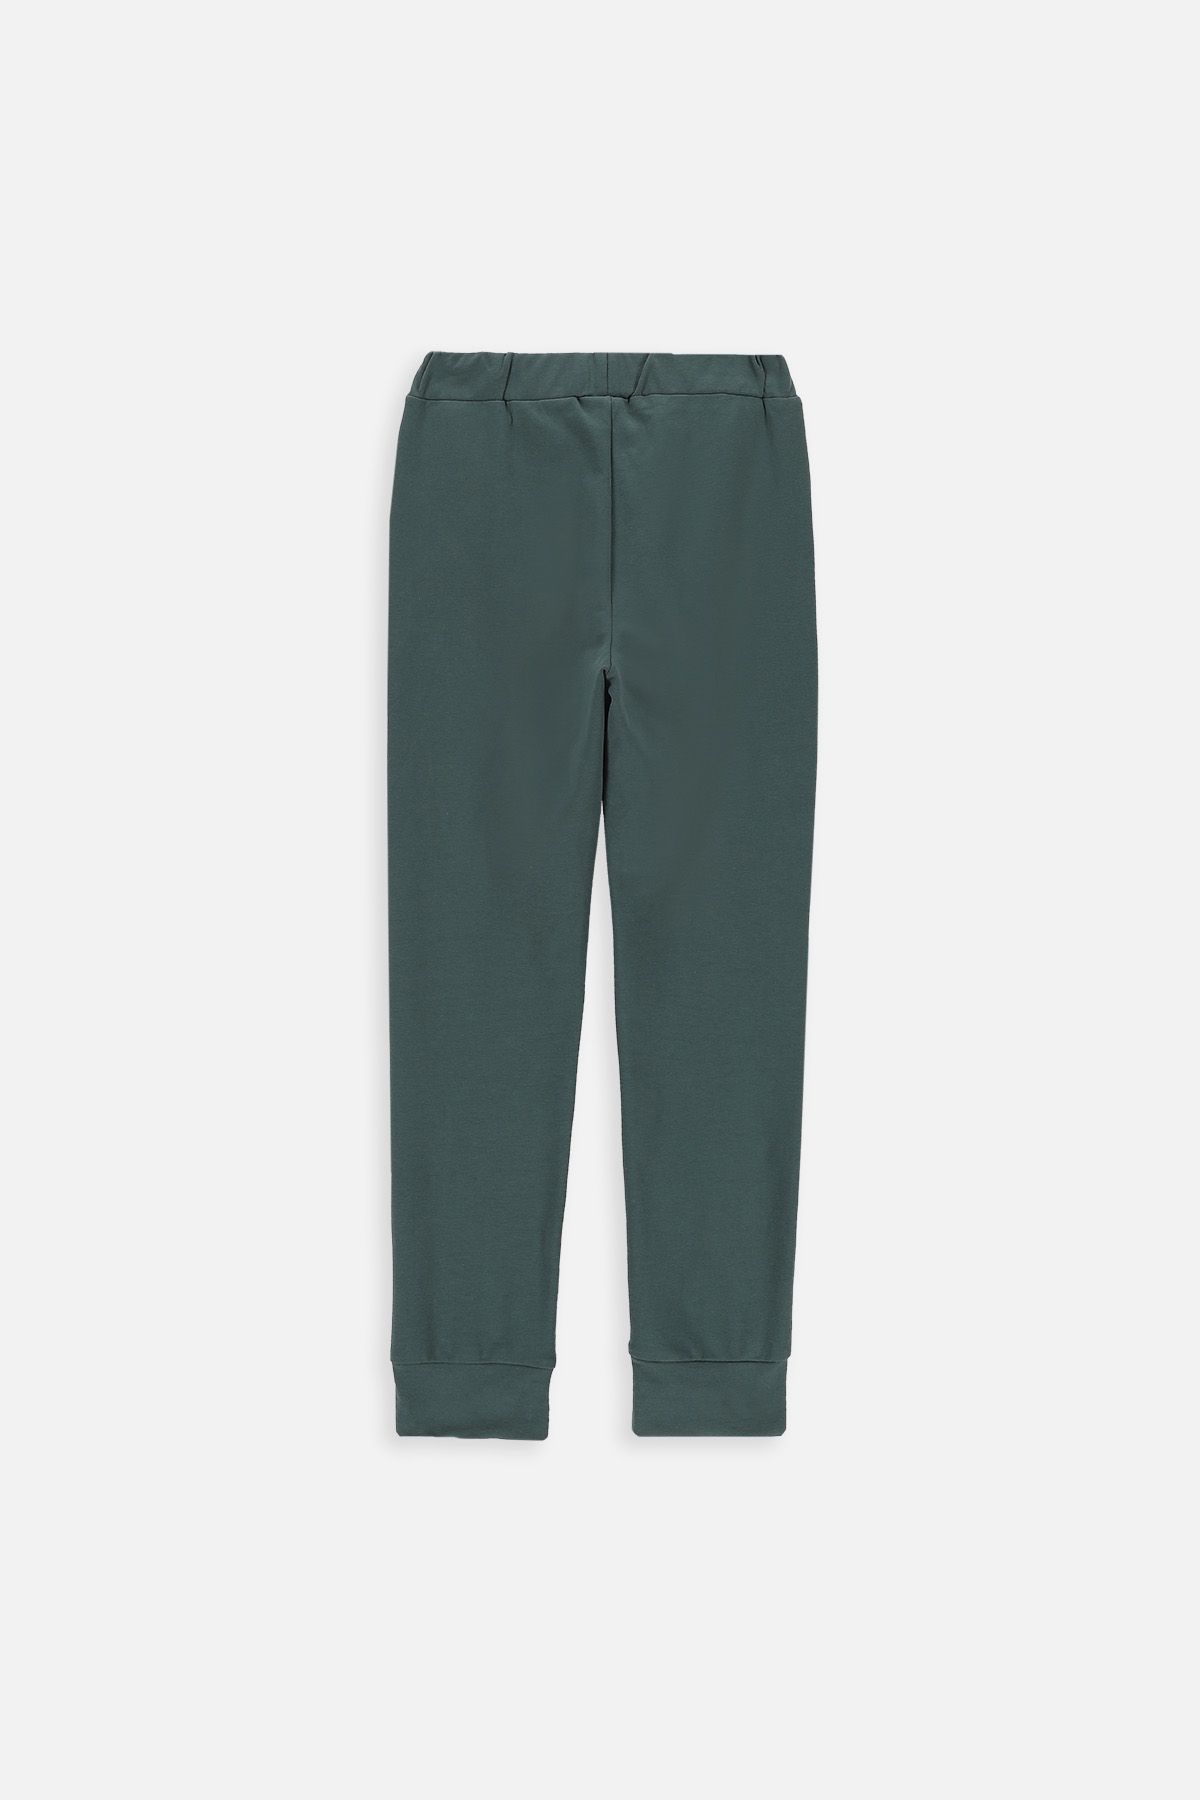 Spodnie dresowe zielone z kieszeniami 2219473